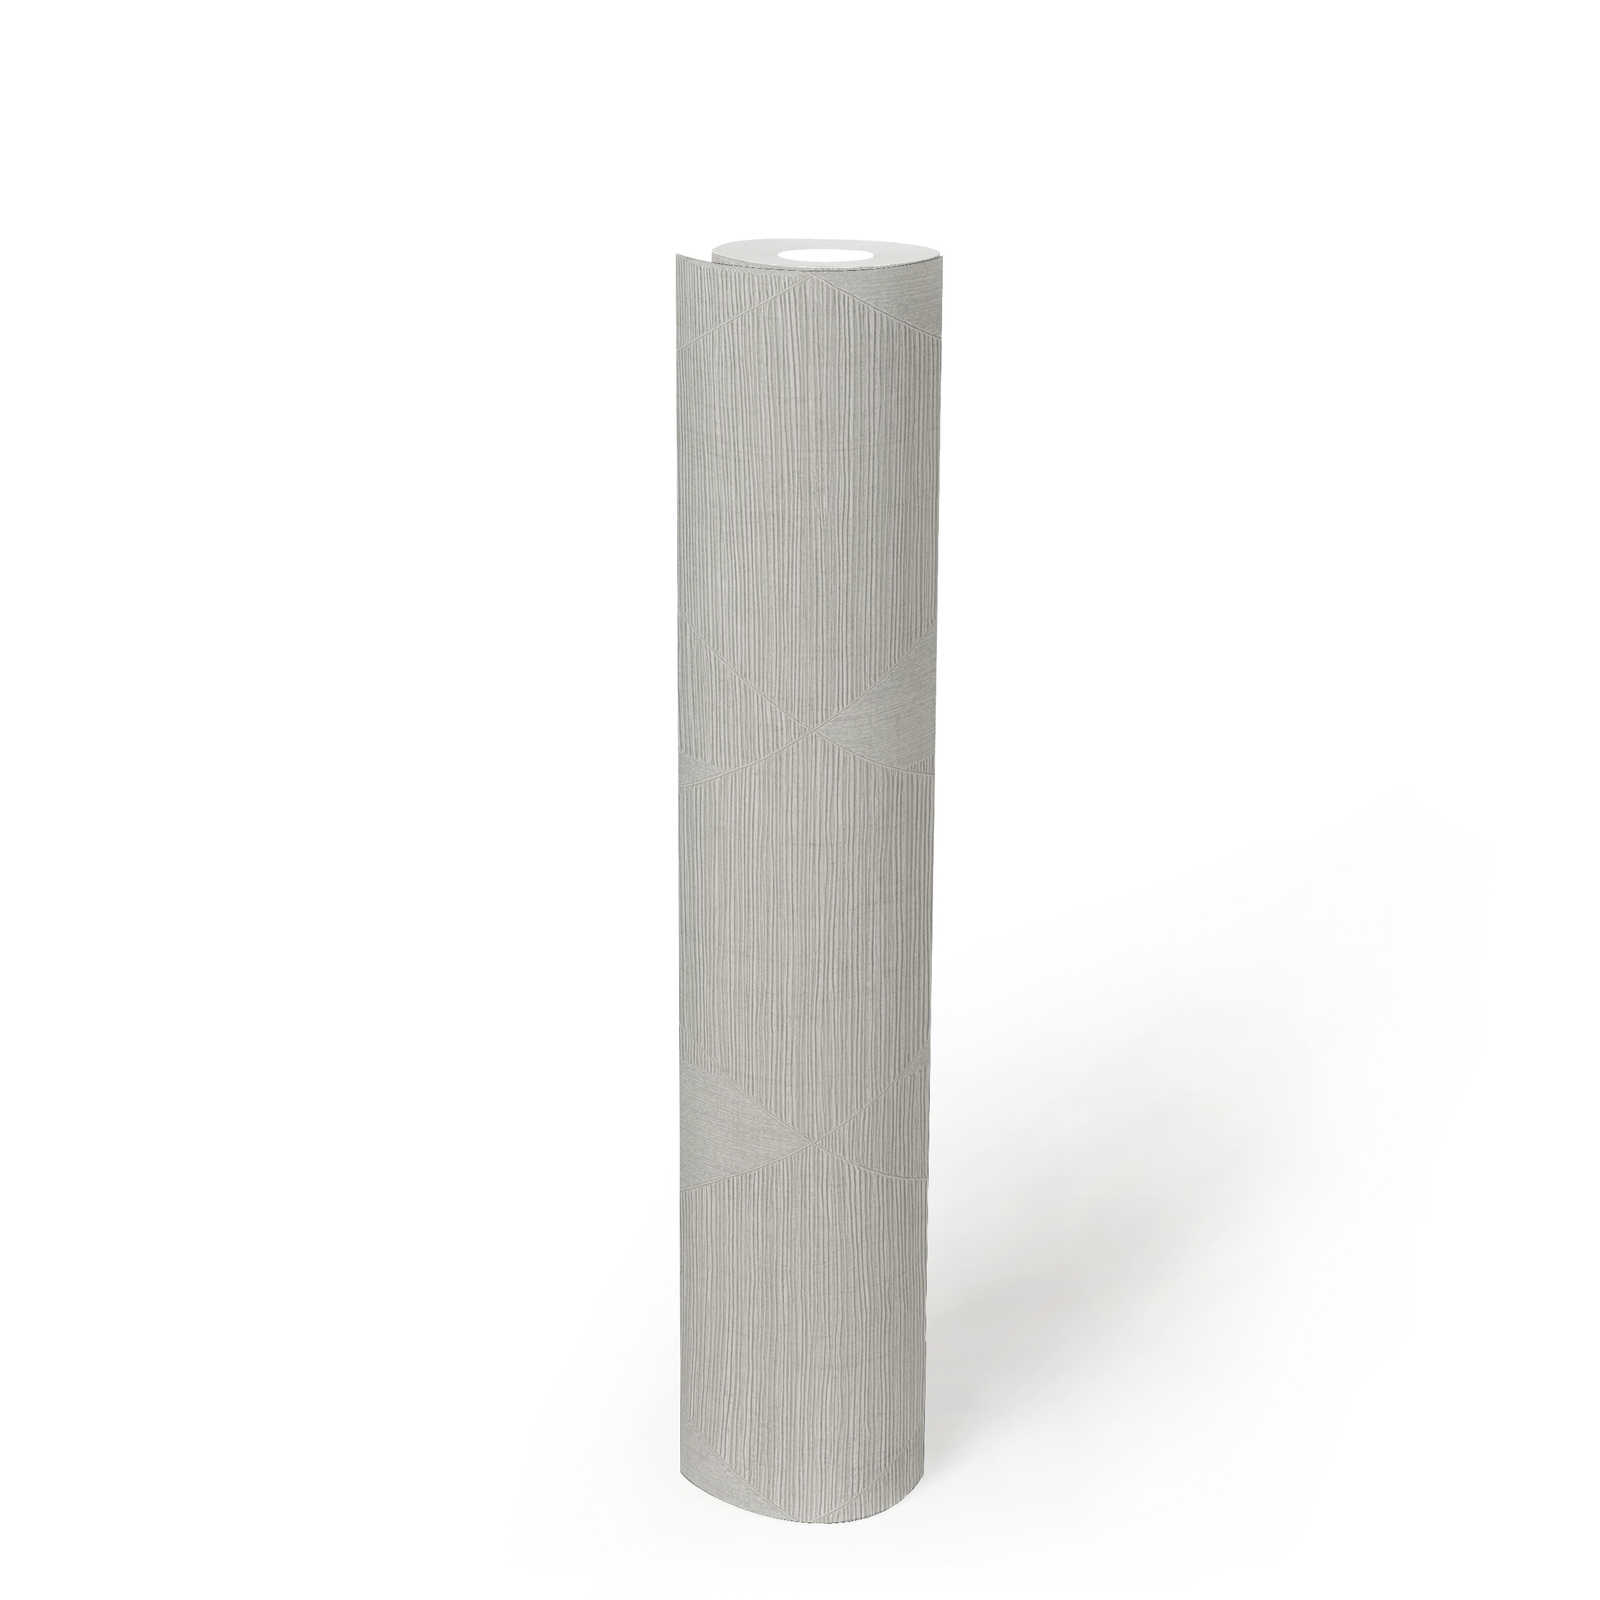             Retro behang met metalen structuur design - grijs, wit
        